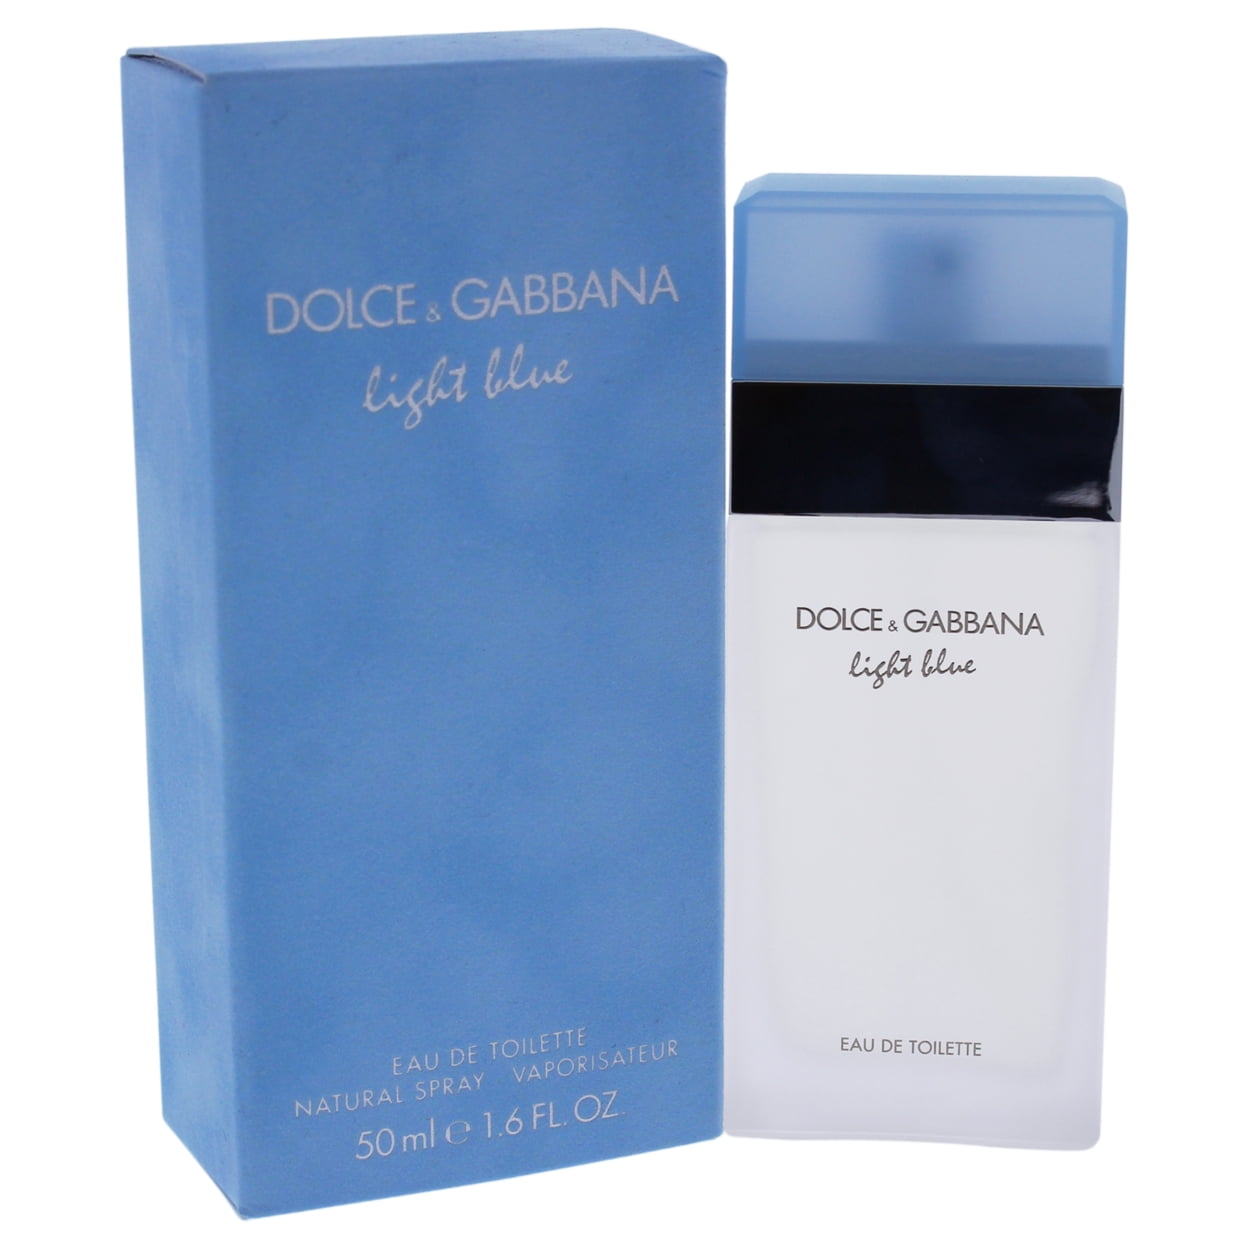 Дольче габбана лайт блю похожие. Dolce. Gabbana Eau de Toilette natural Spray. Dolce Gabbana Light Blue 2001. Дольче Габбана Light Blue Forever. Найт Блю Дольче Габбана.